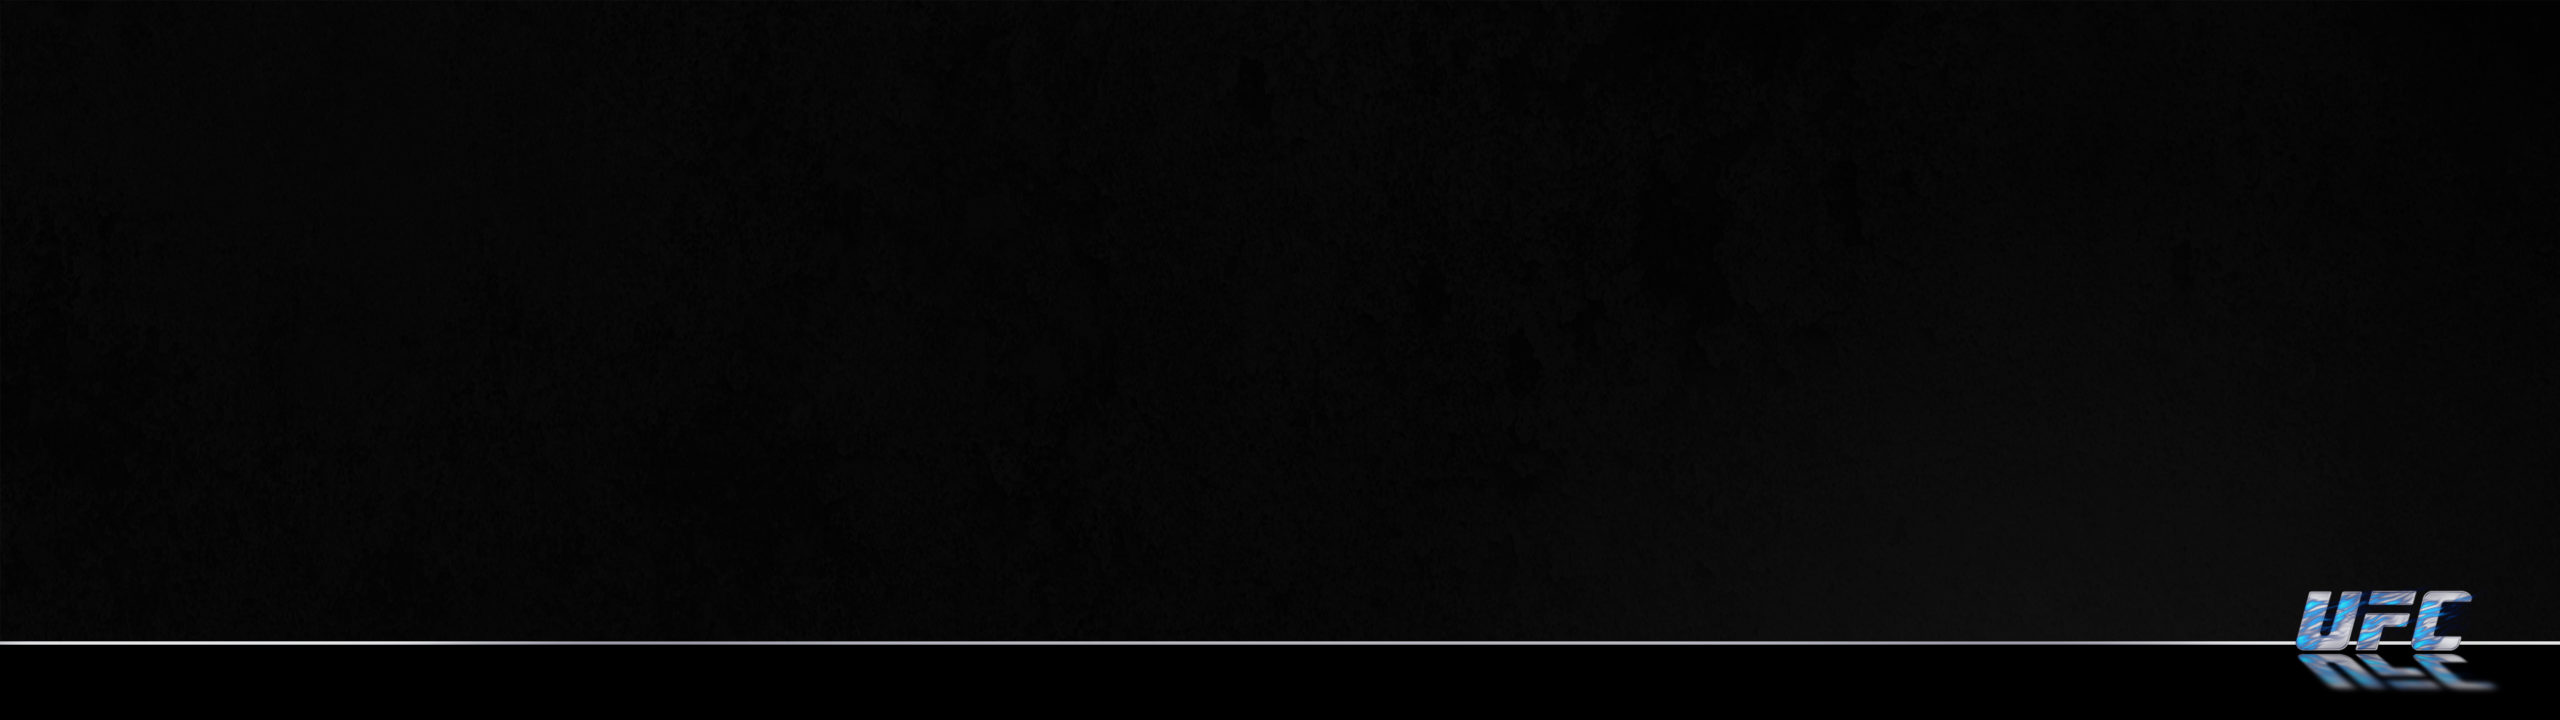 Ufc Flames Grunge Black 7 Blue Background 1080×3840